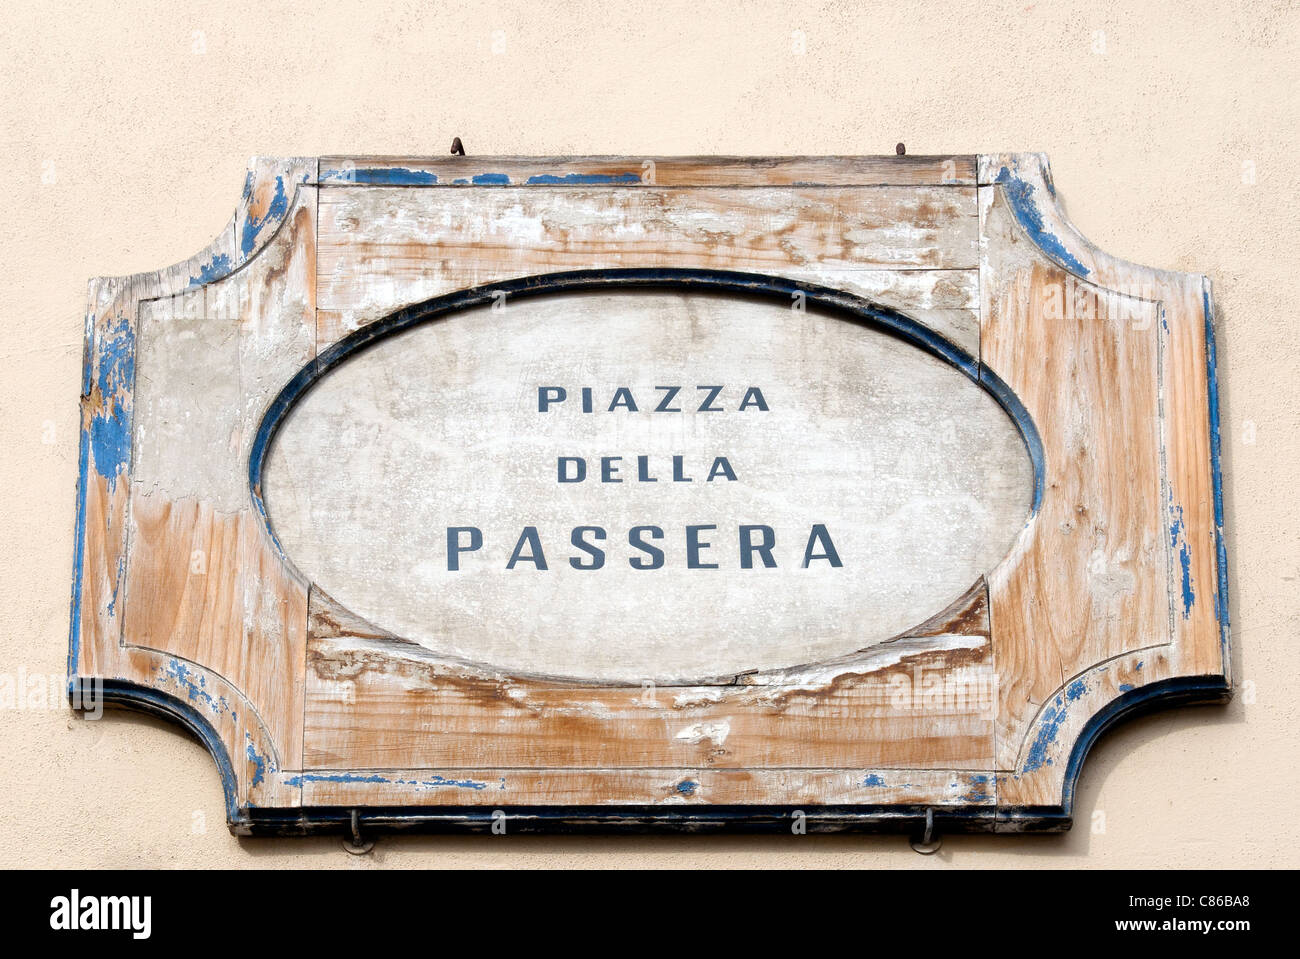 Placa de mármol de la Piazza della Passera, Firenze, Toscana, Italia, Sitio del Patrimonio Mundial de la UNESCO Foto de stock